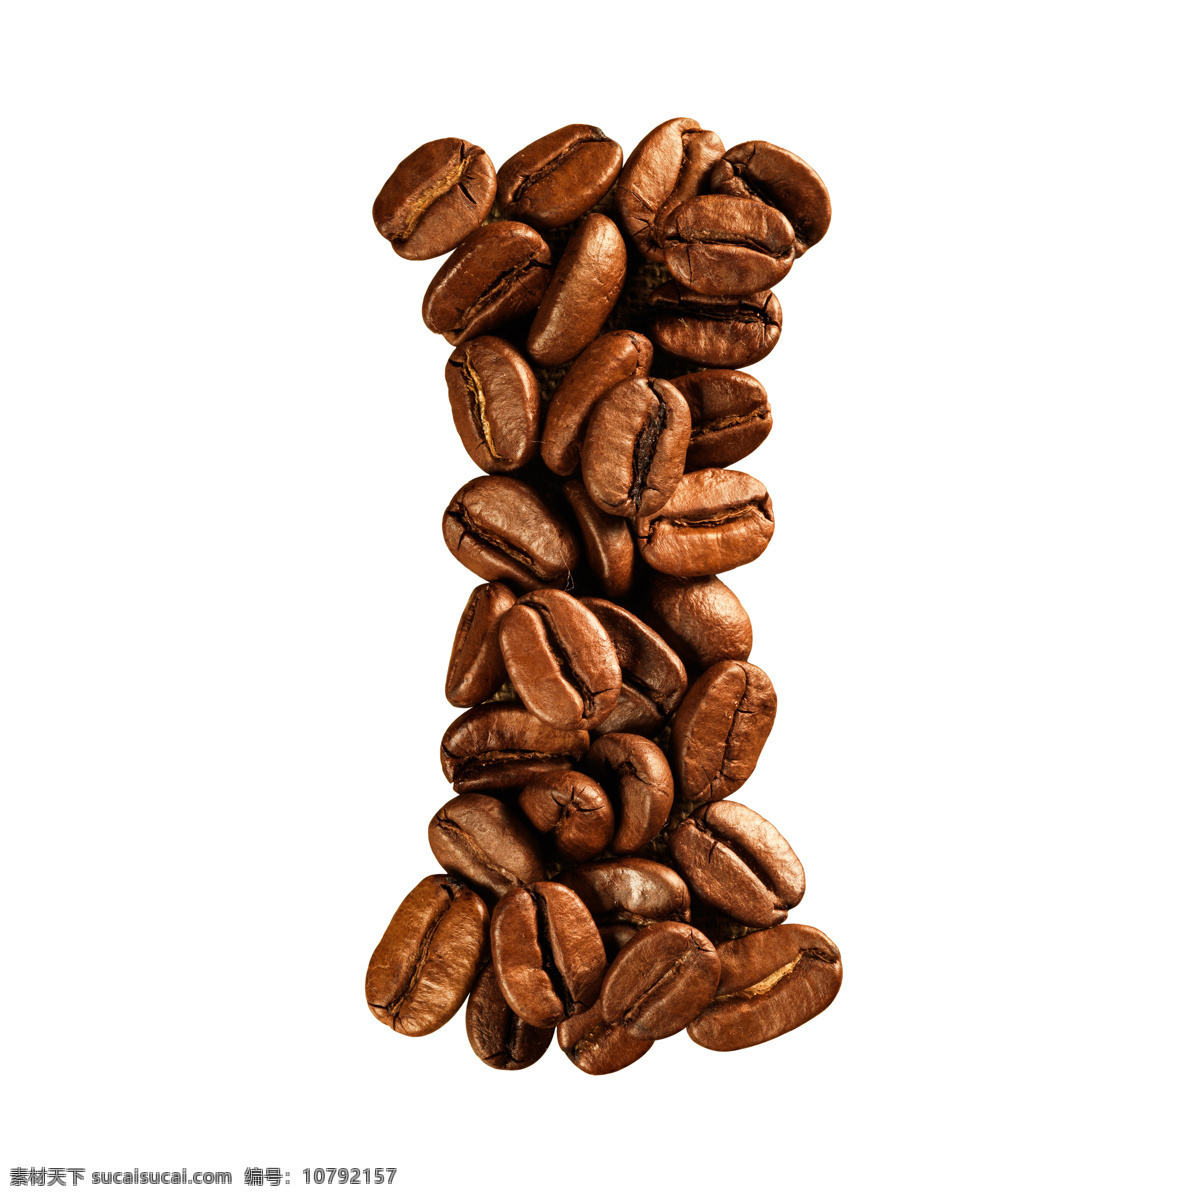 咖啡豆 组成 字母 i 咖啡 文字 艺术字体 咖啡图片 餐饮美食